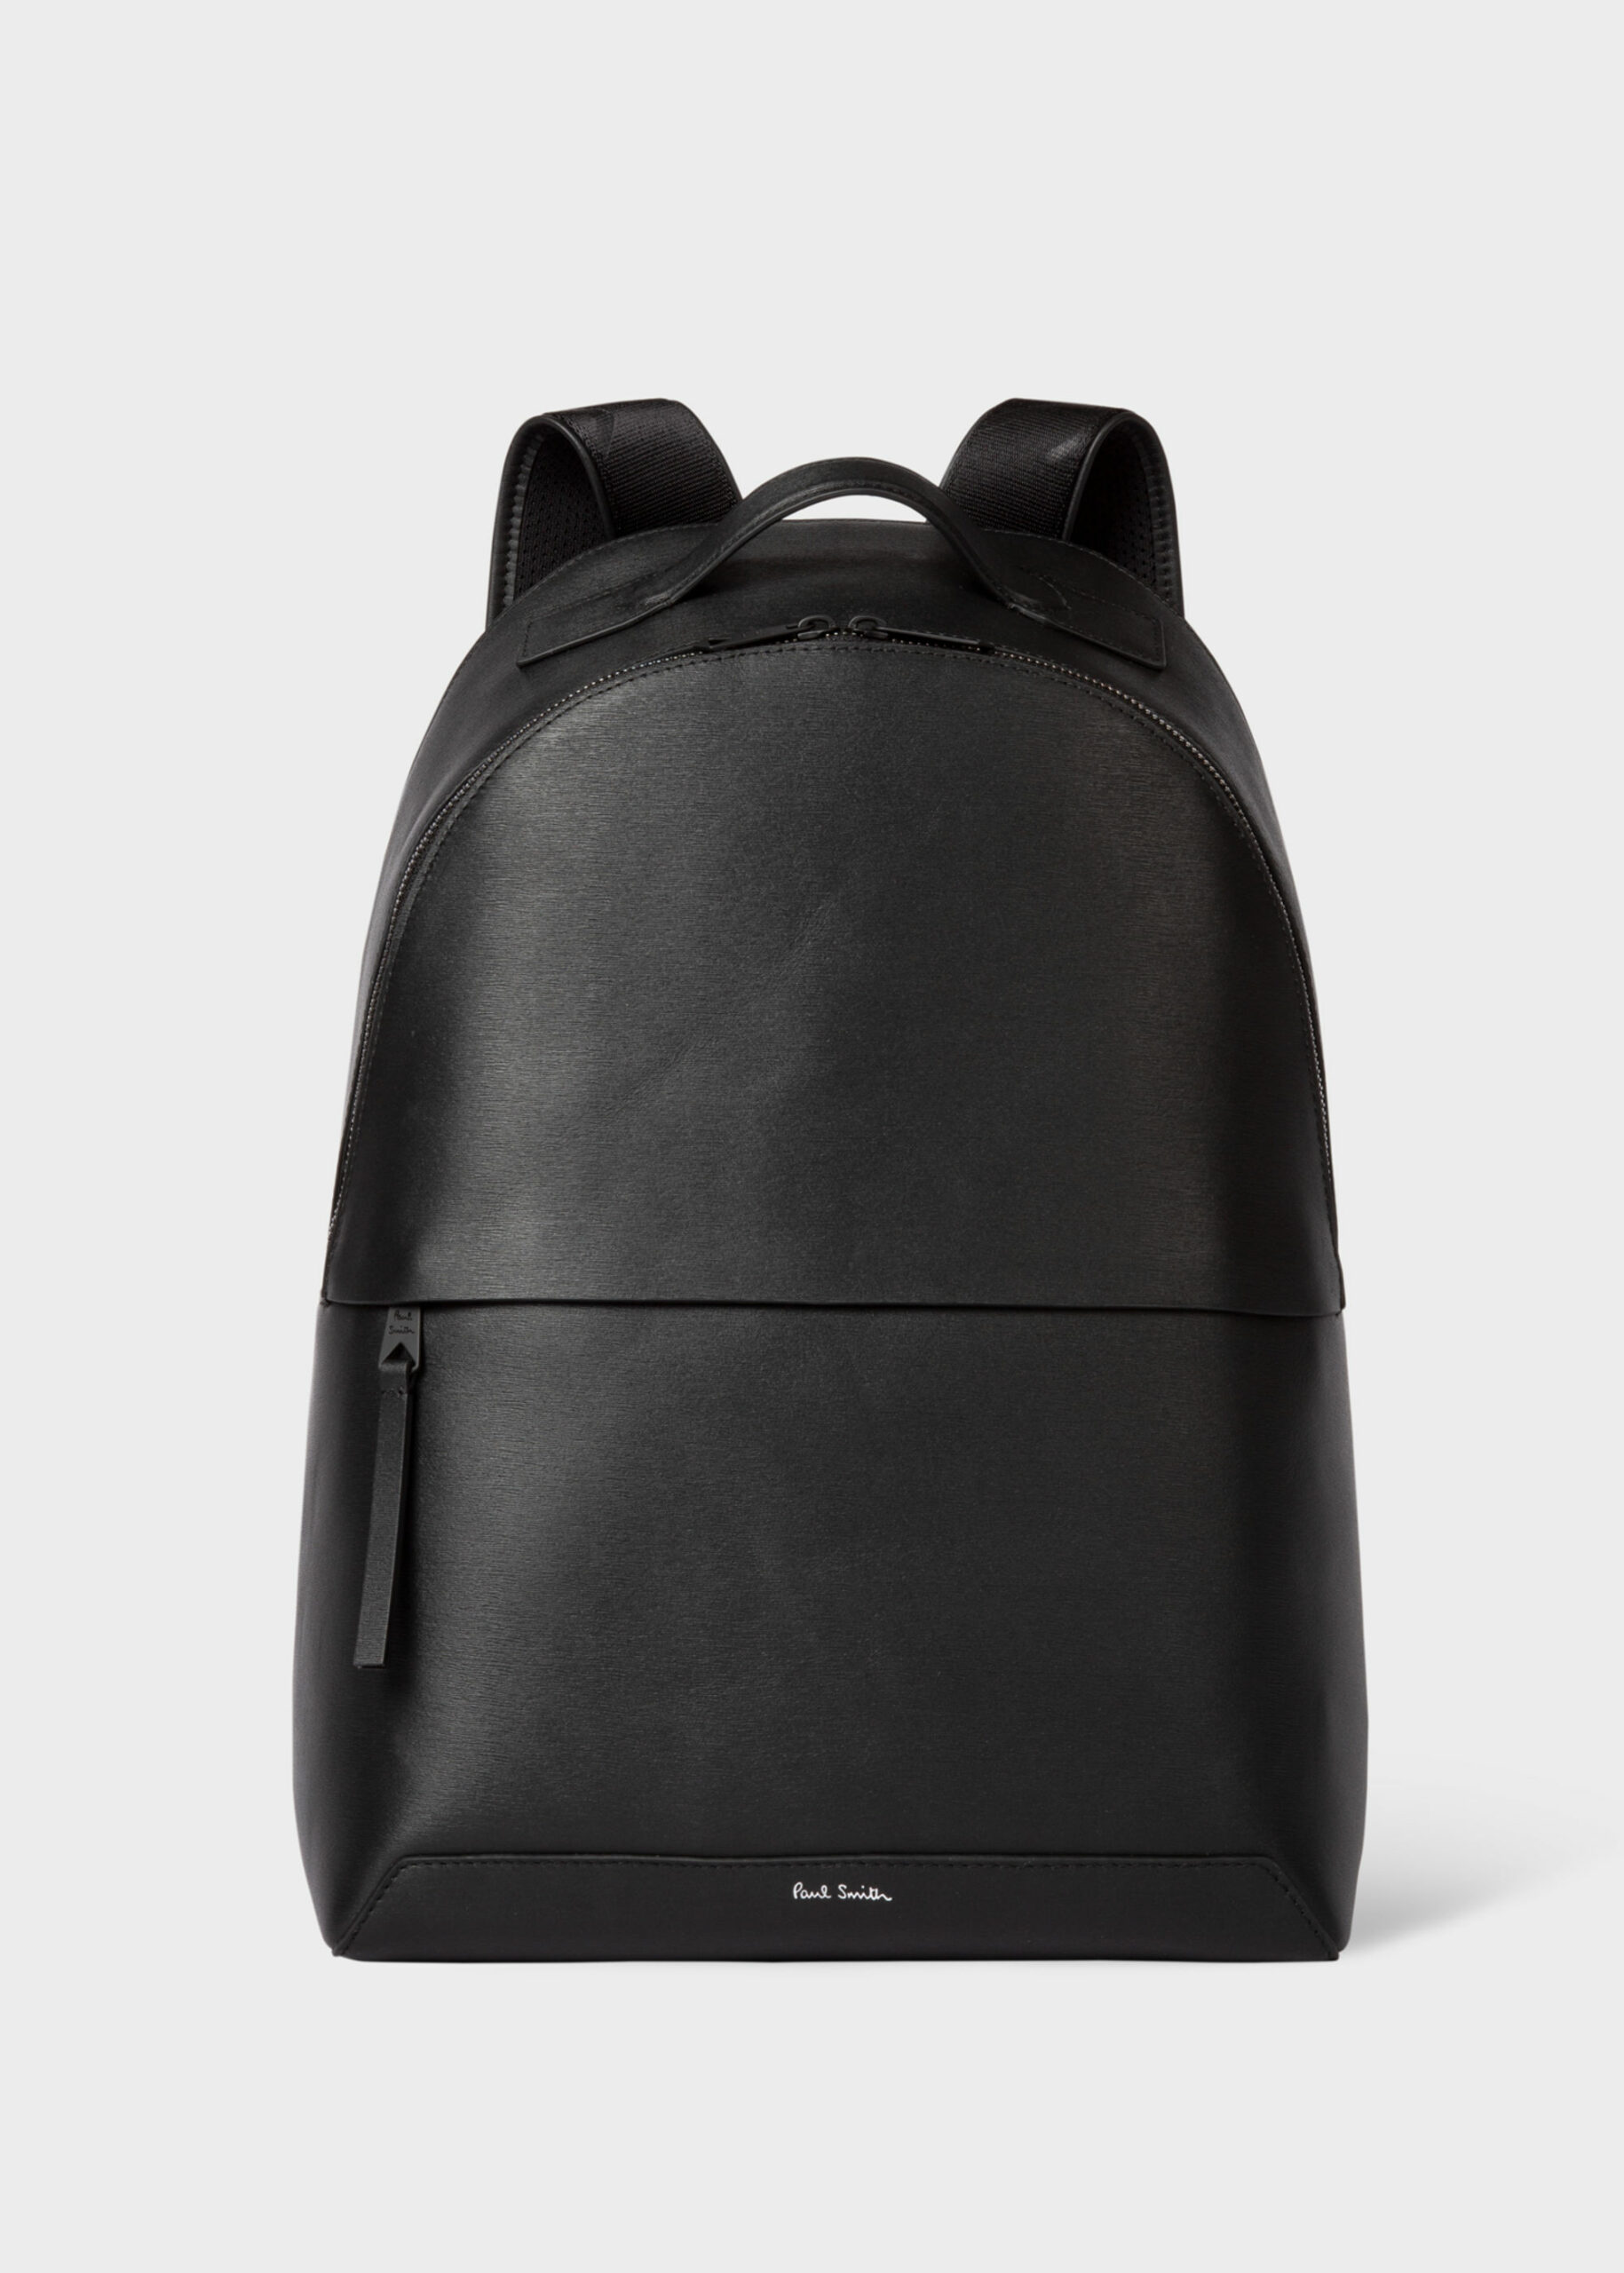 Black Embossed Leather Backpack - Shop